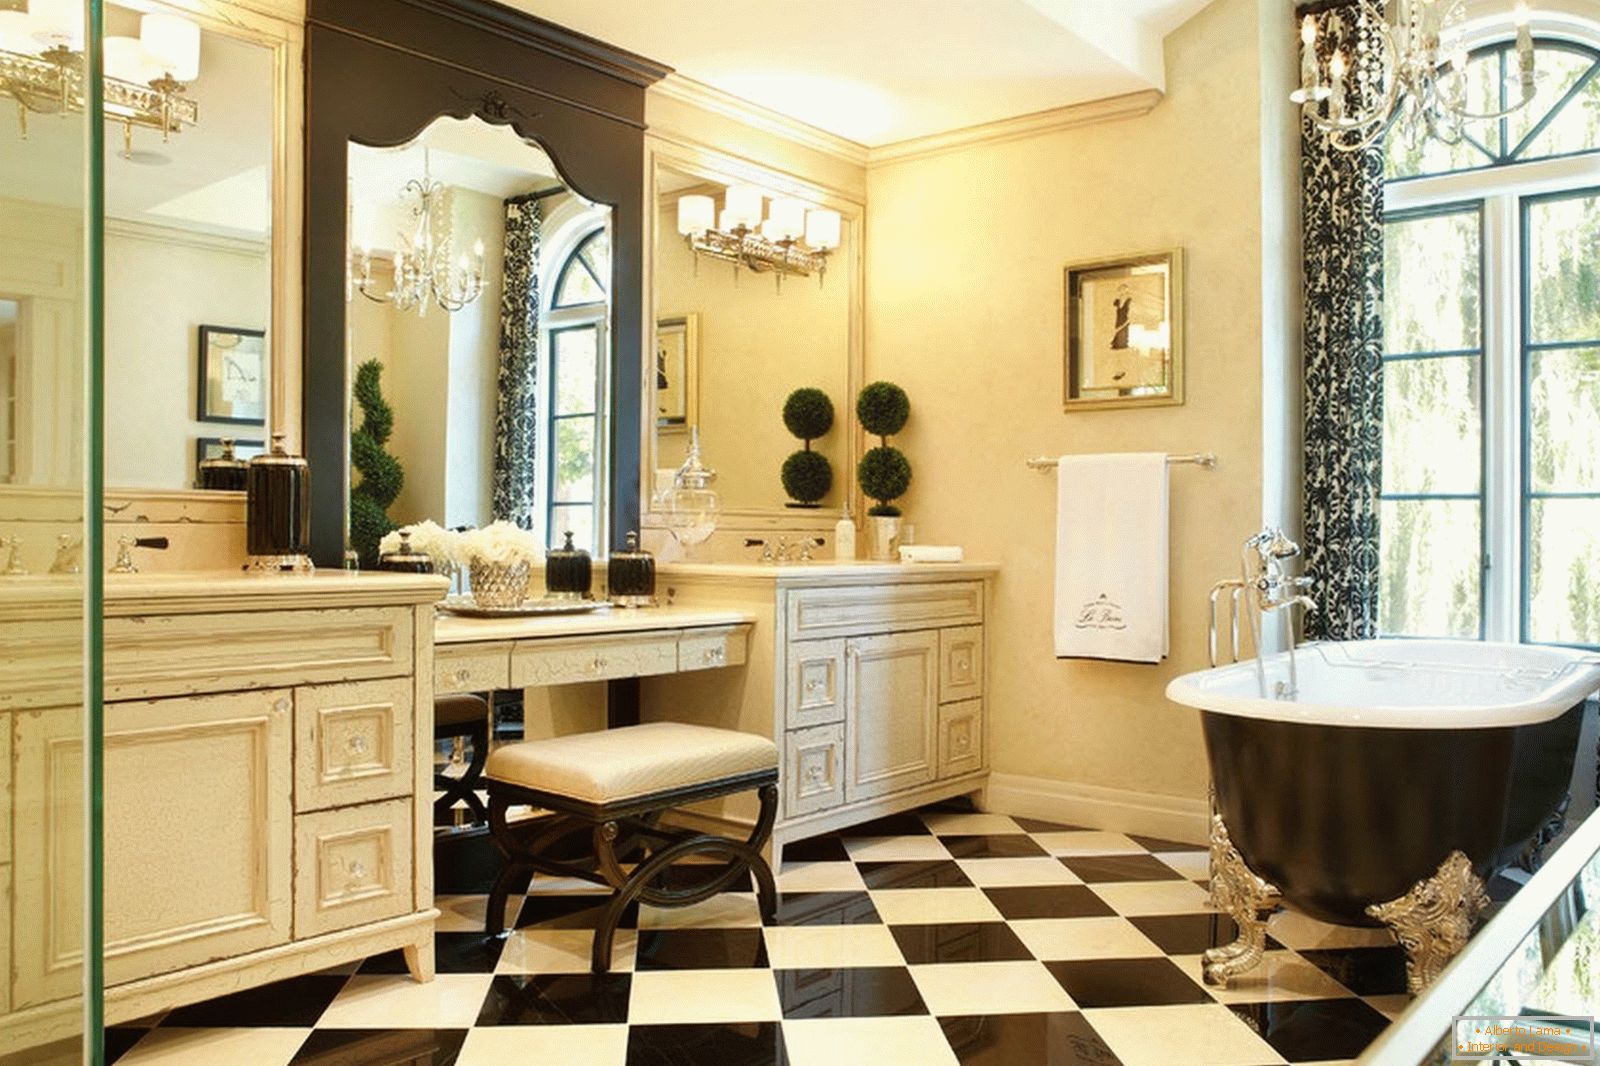 Piso de xadrez no banheiro em estilo clássico